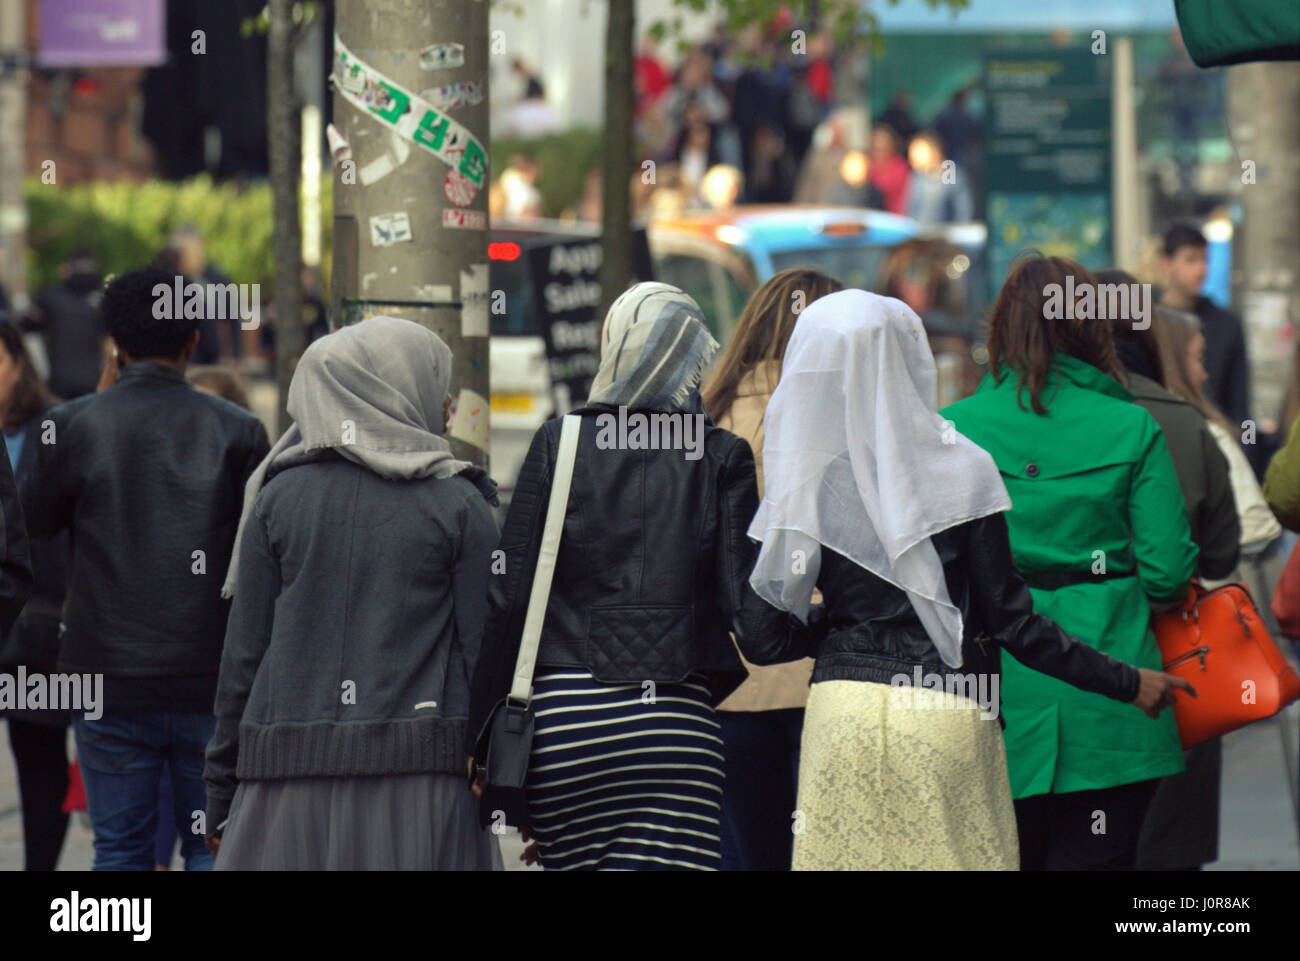 Los refugiados africanos asiáticos visten el Hijab pañuelo sobre calle escena cotidiana en el Reino Unido tres niñas caminando en multitud Foto de stock